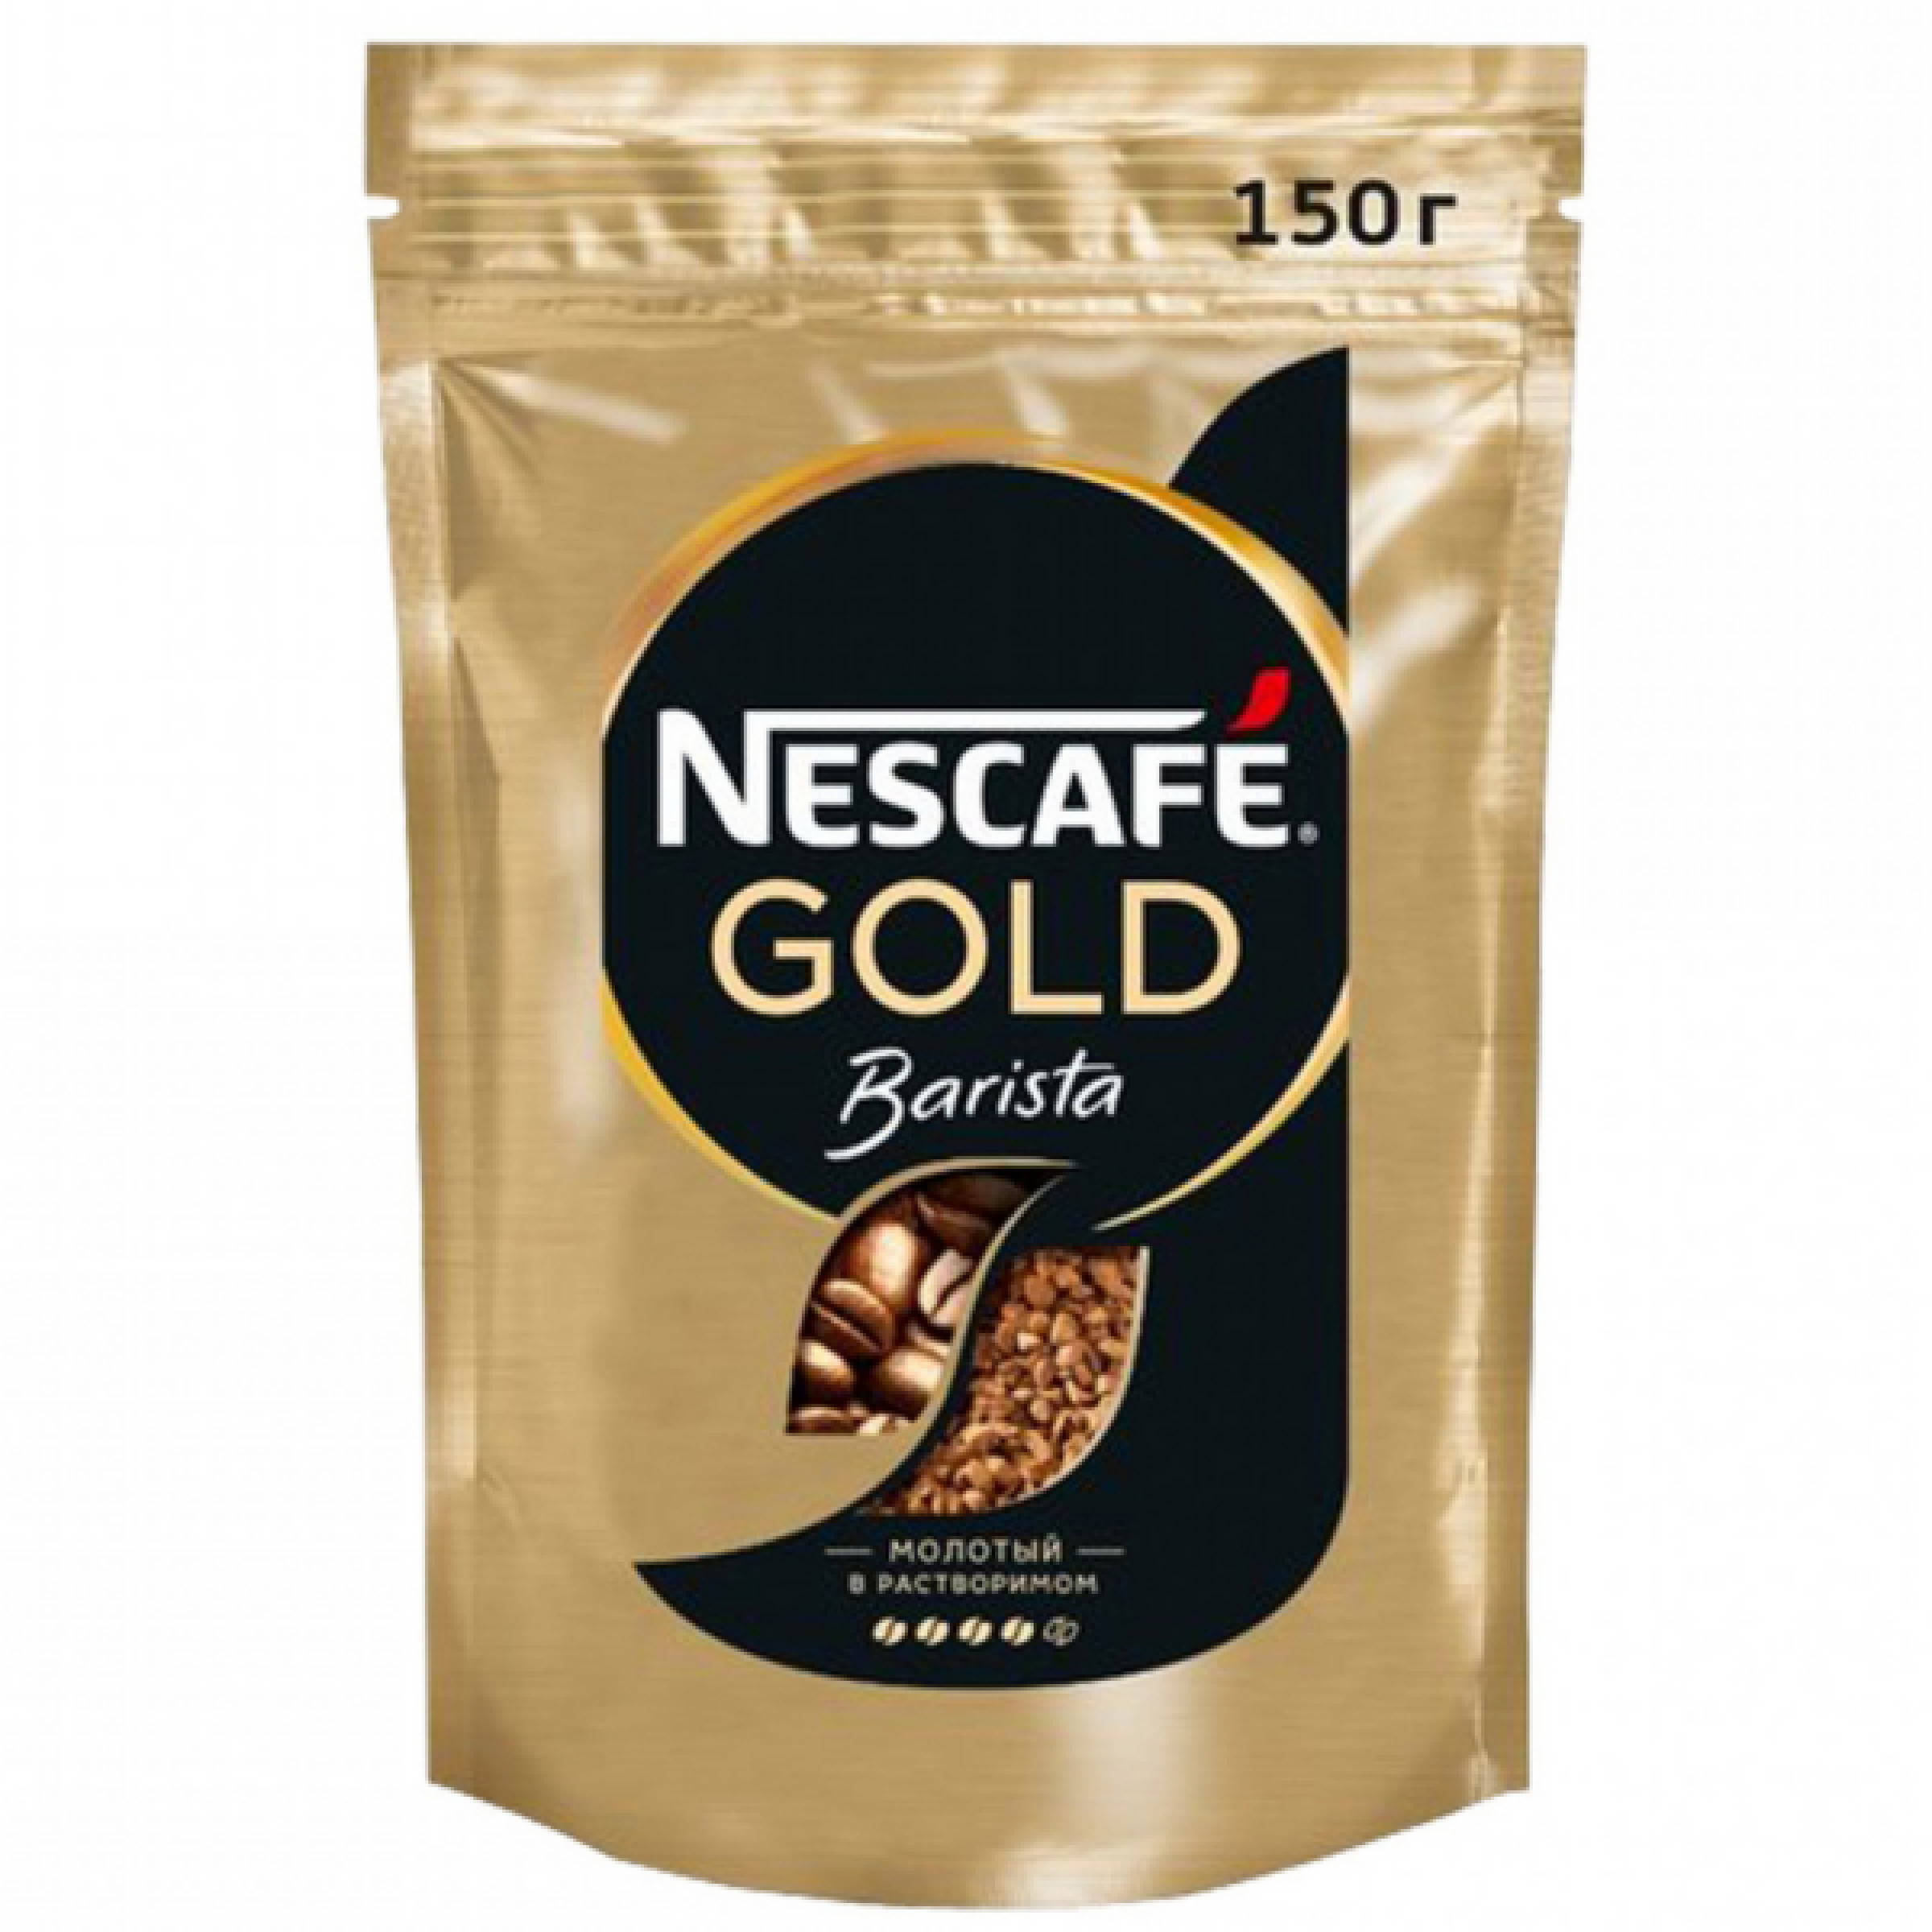 NESCAFE GOLD Кофе натуральный растворимый сублимированный с добавлением натурального жаренного молотого кофе, 150 гр